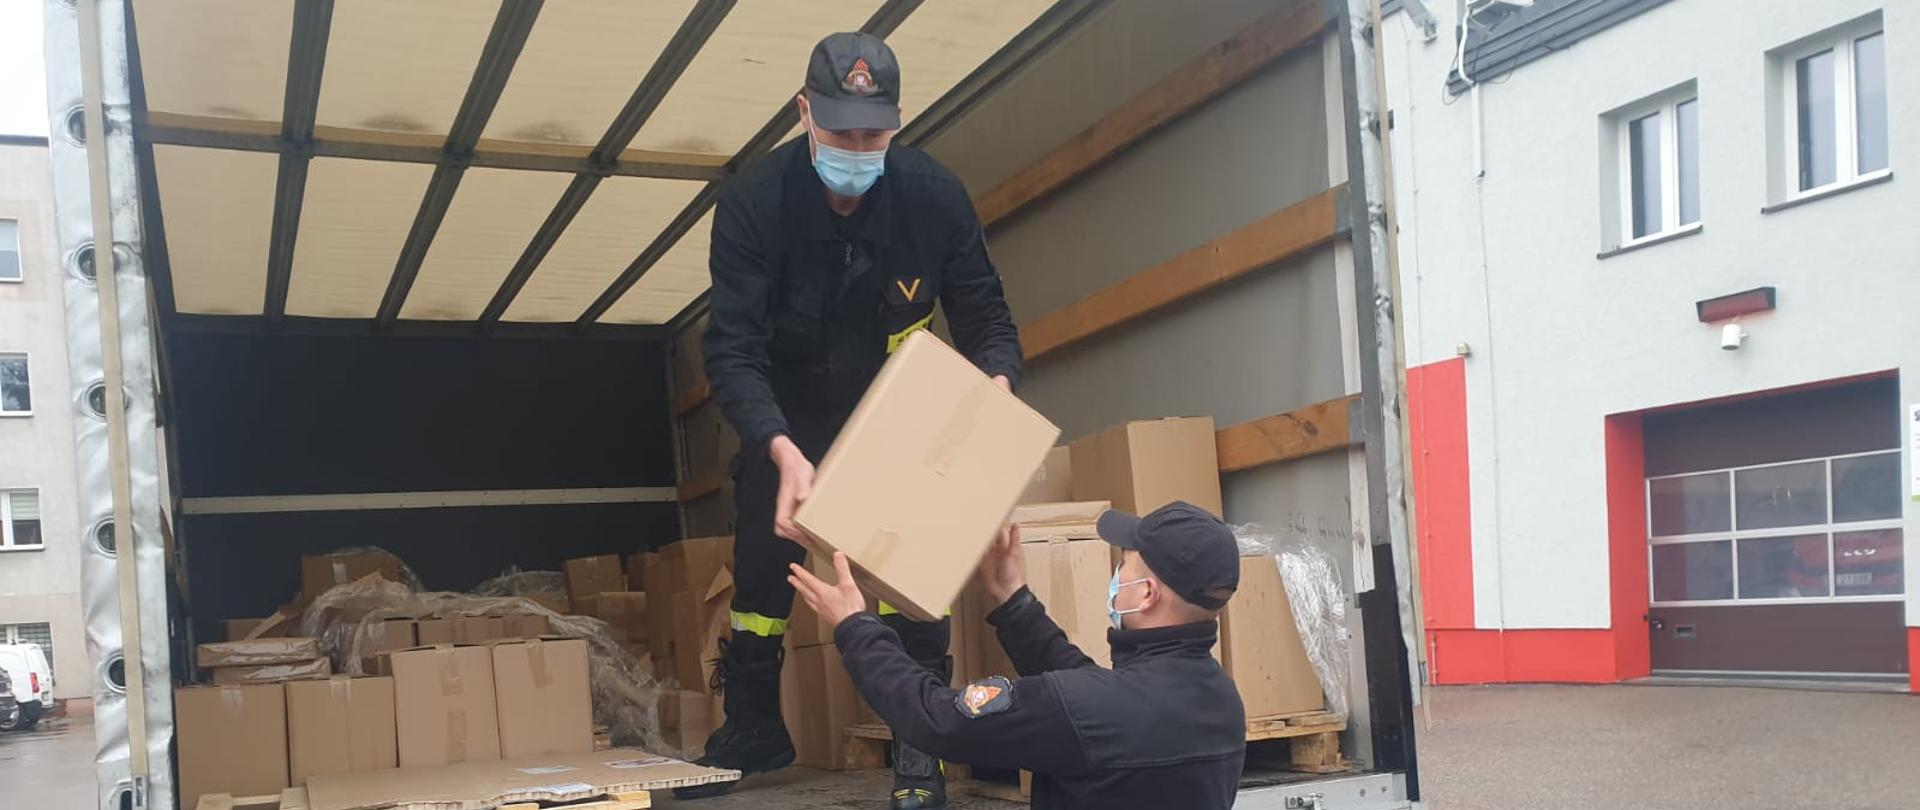 Strażacy rozładowują pudełka z ulotkami z samochodu ciężarowego